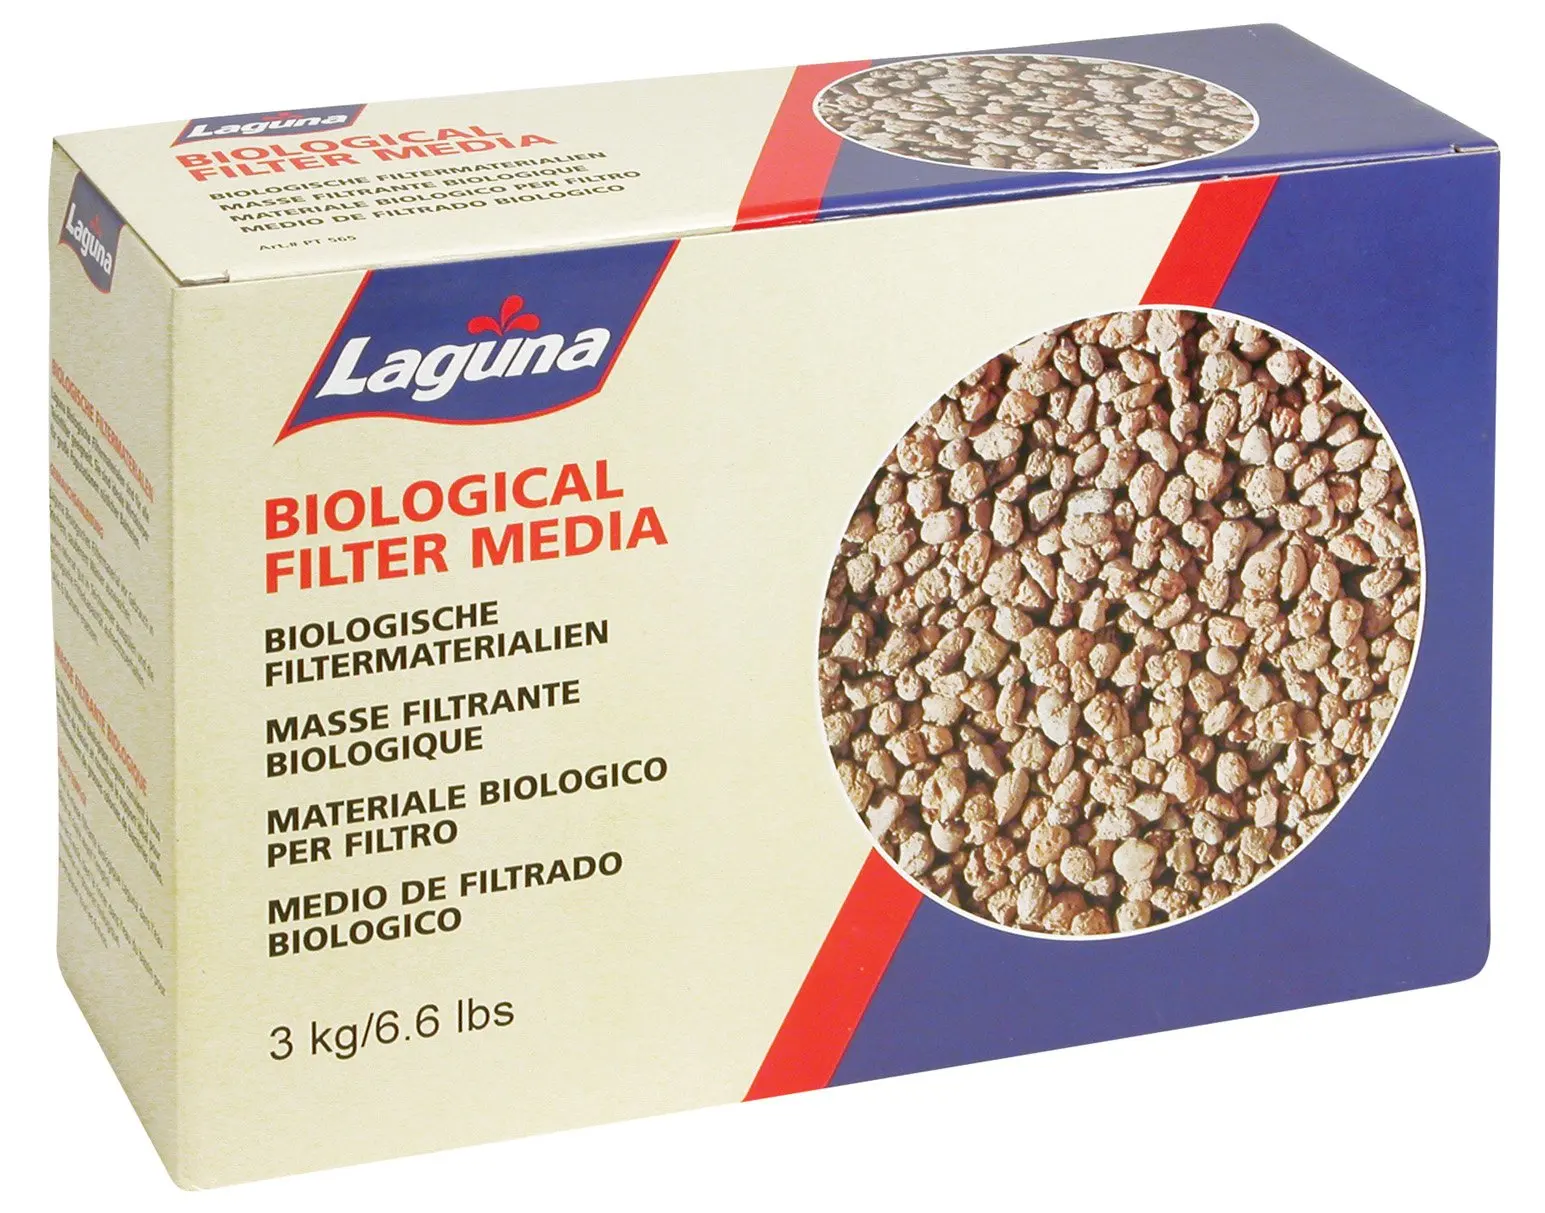 Media 06. Filter Media. Sebo Biological Filter. Filtrado.